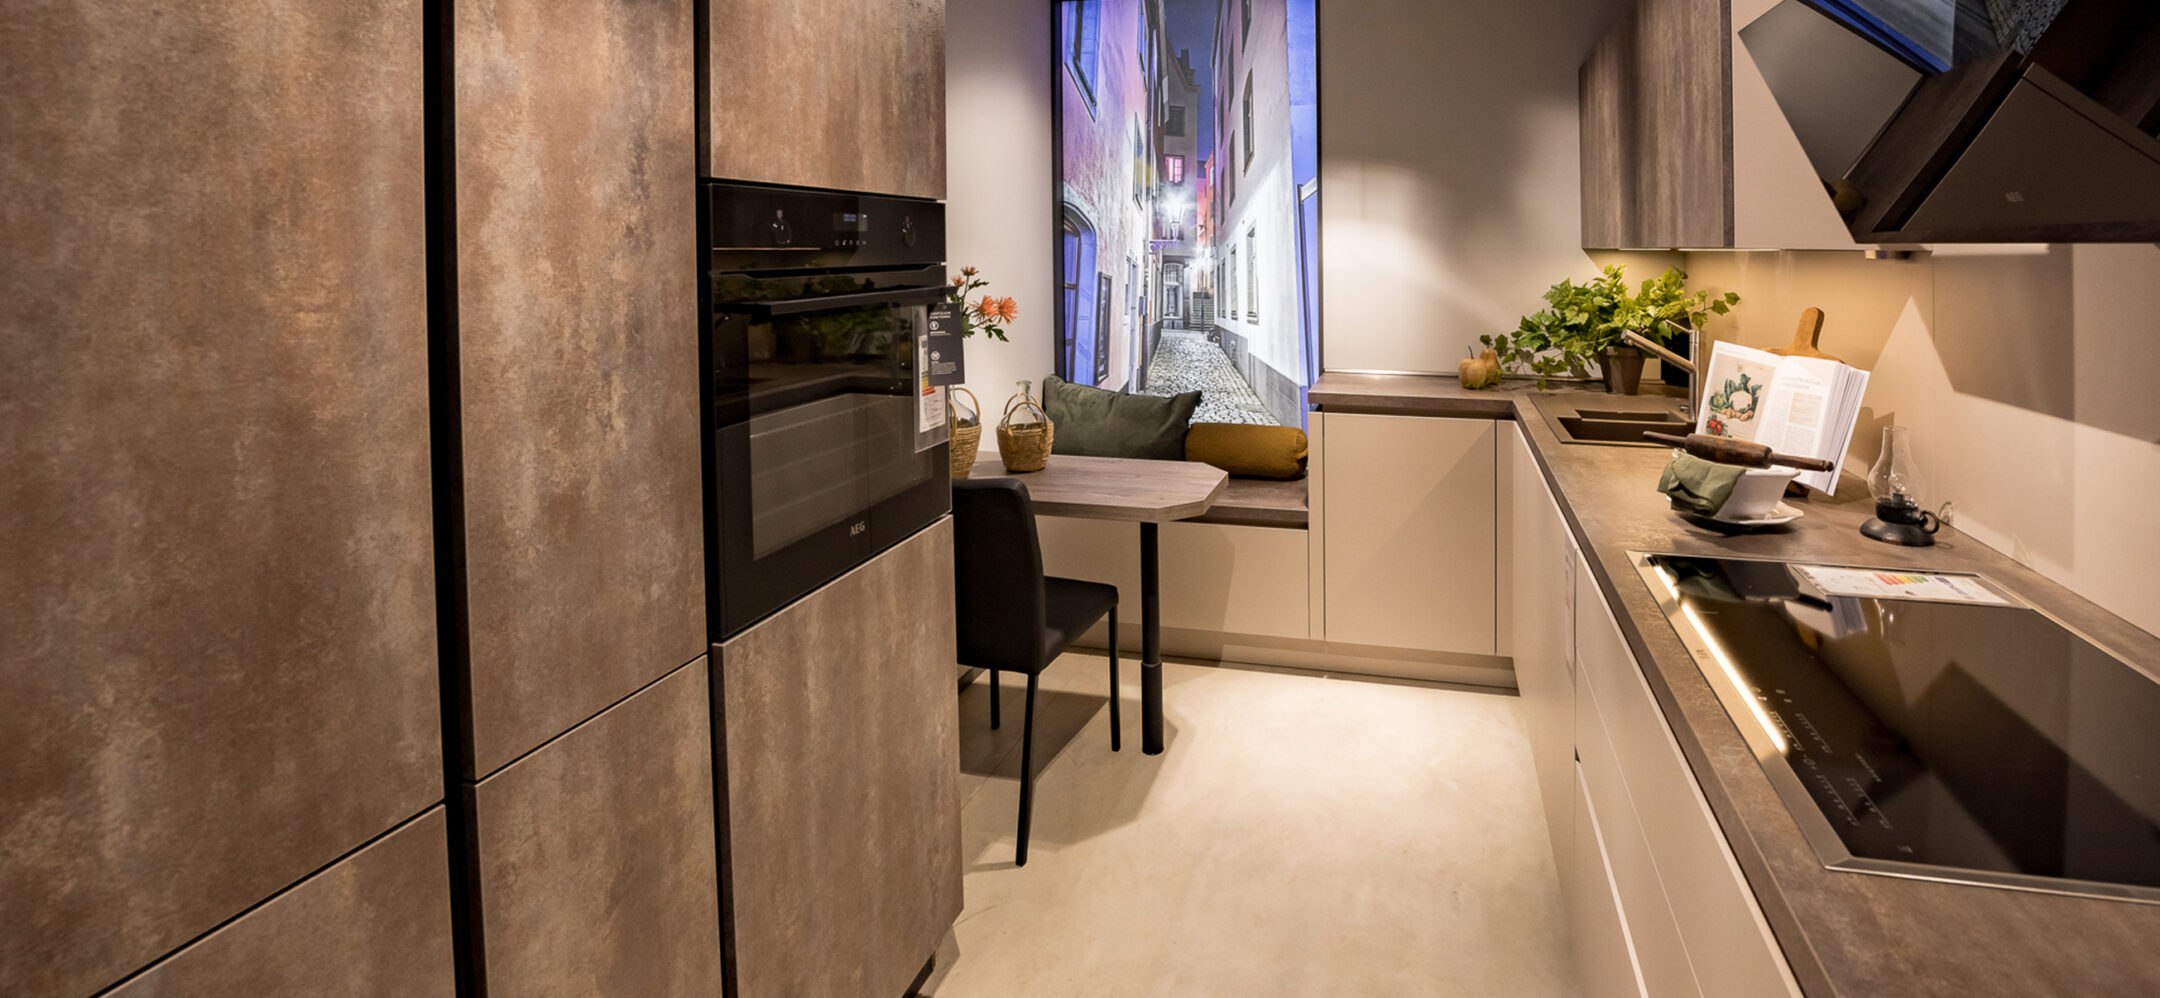 Grifflose moderne Küche auf kleinem Raum in Niederzier